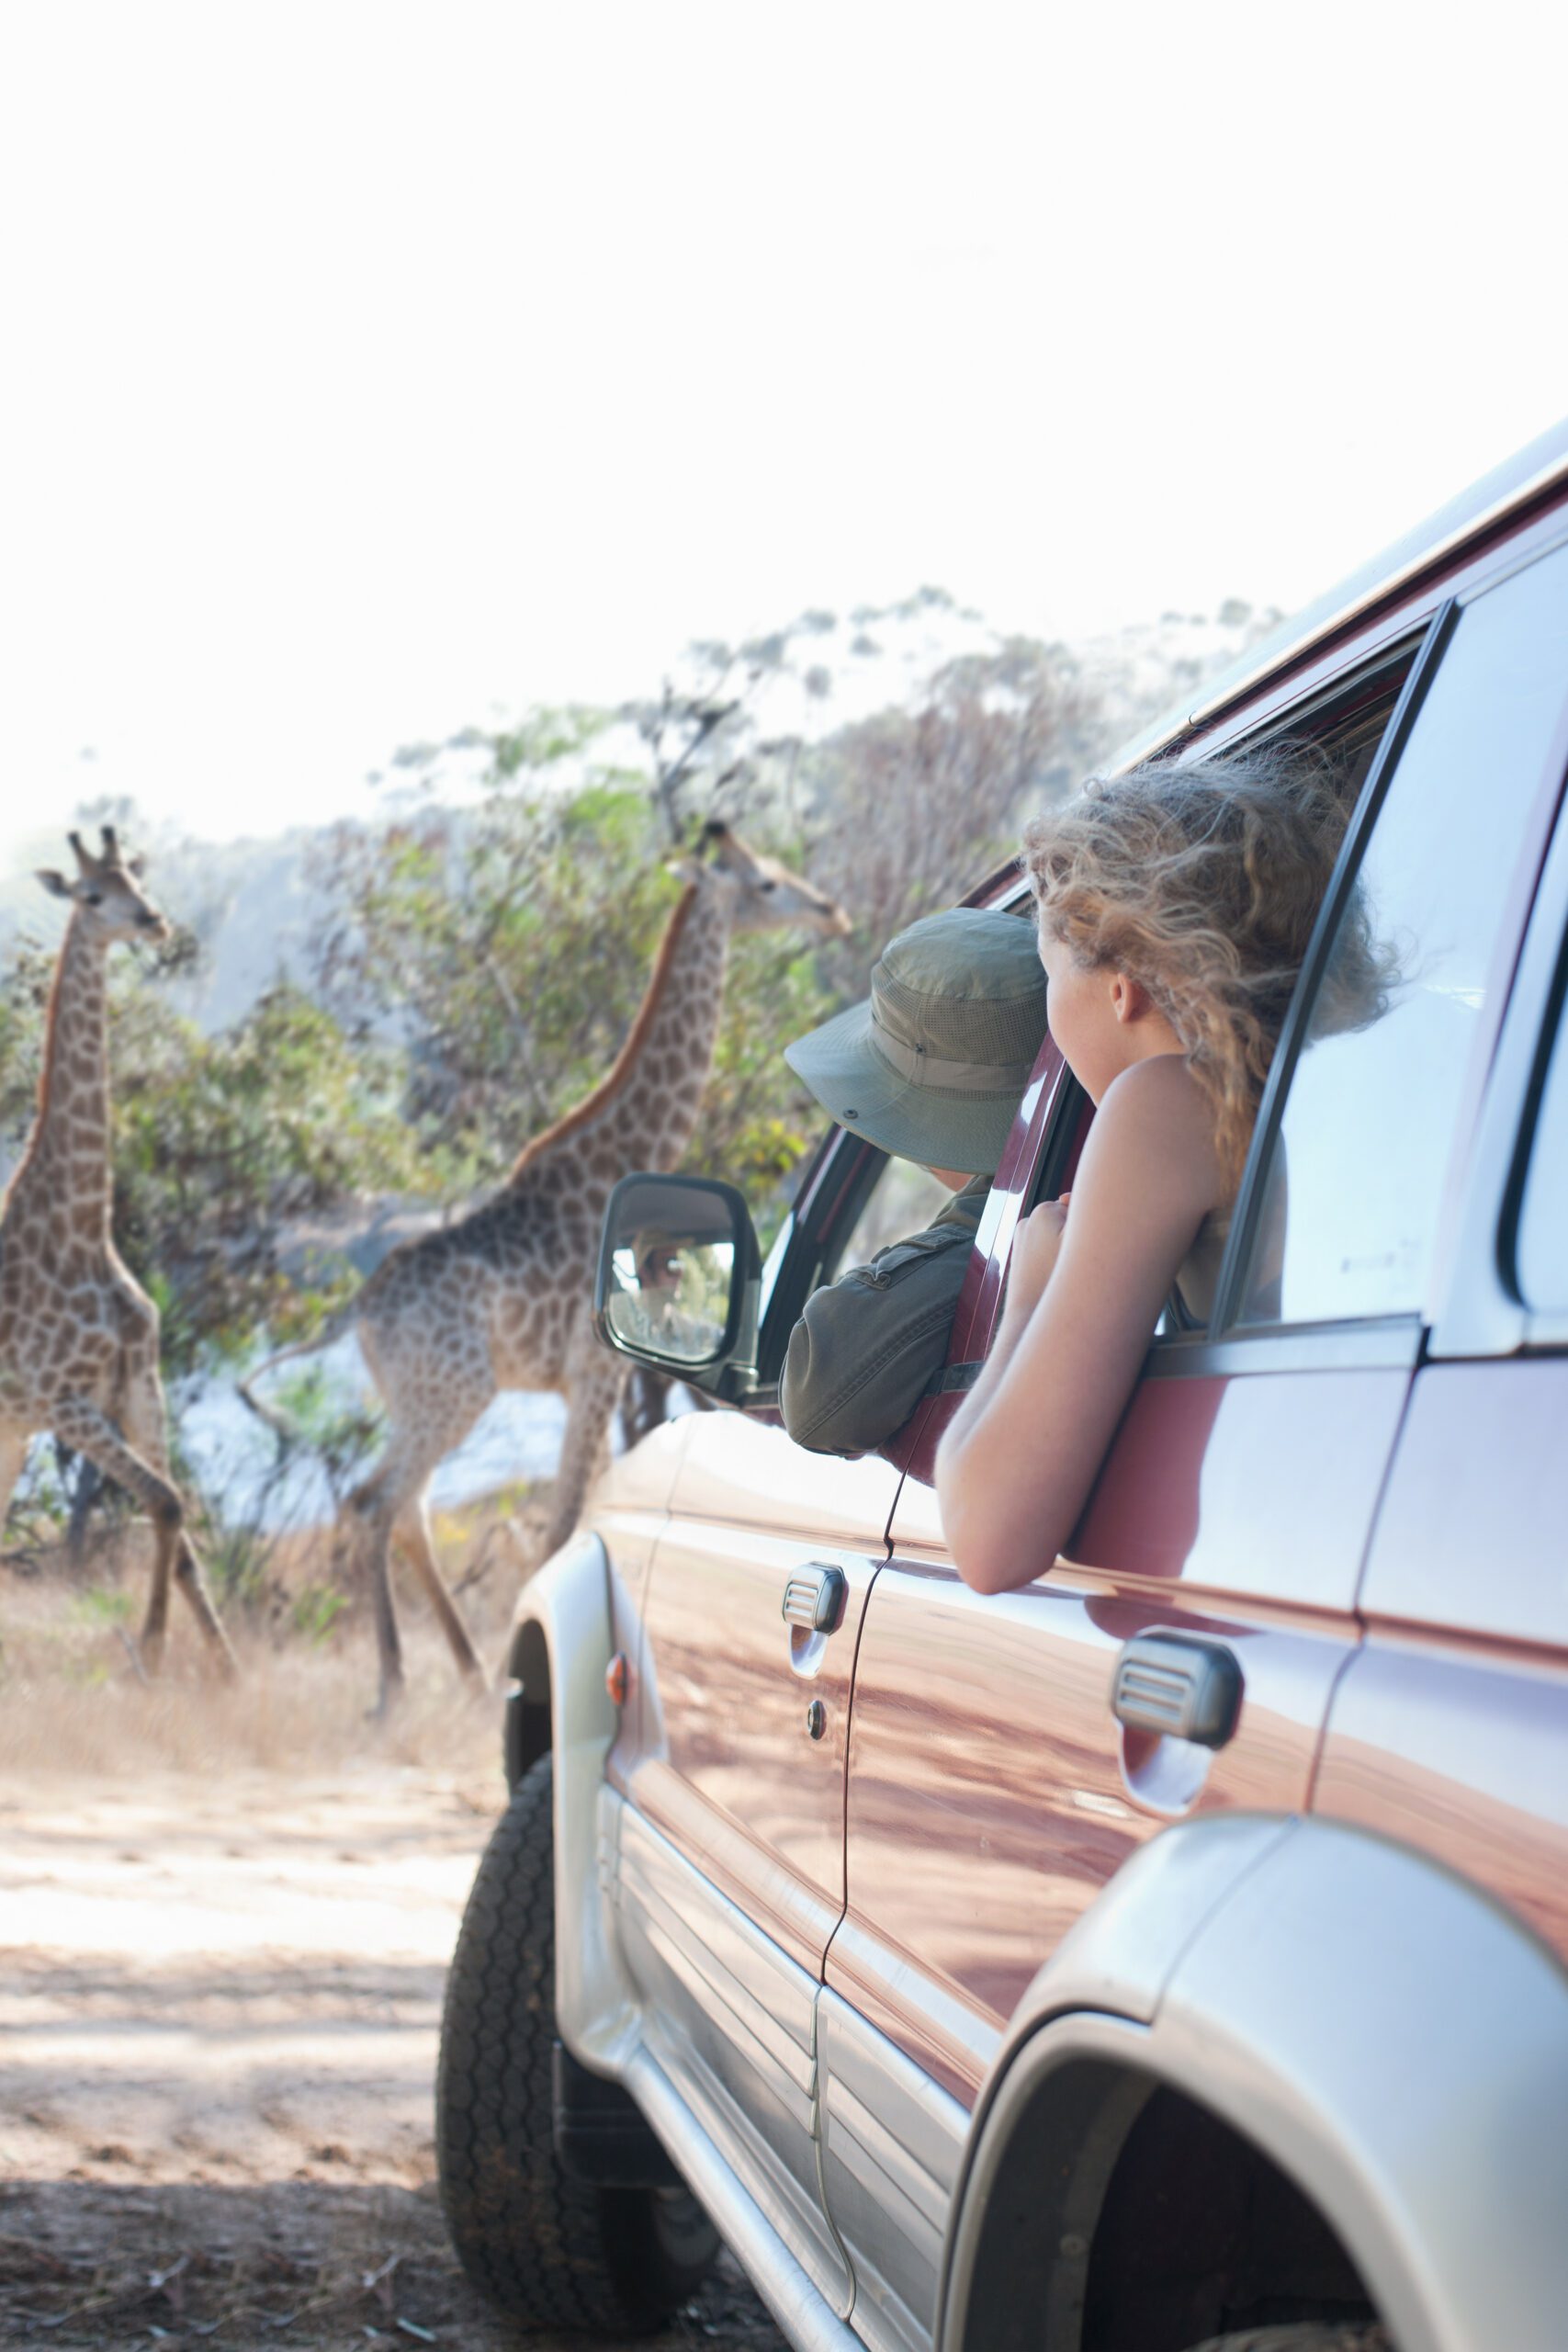 Women looking at giraffes from vehicle, Stellenbosch, South Africa